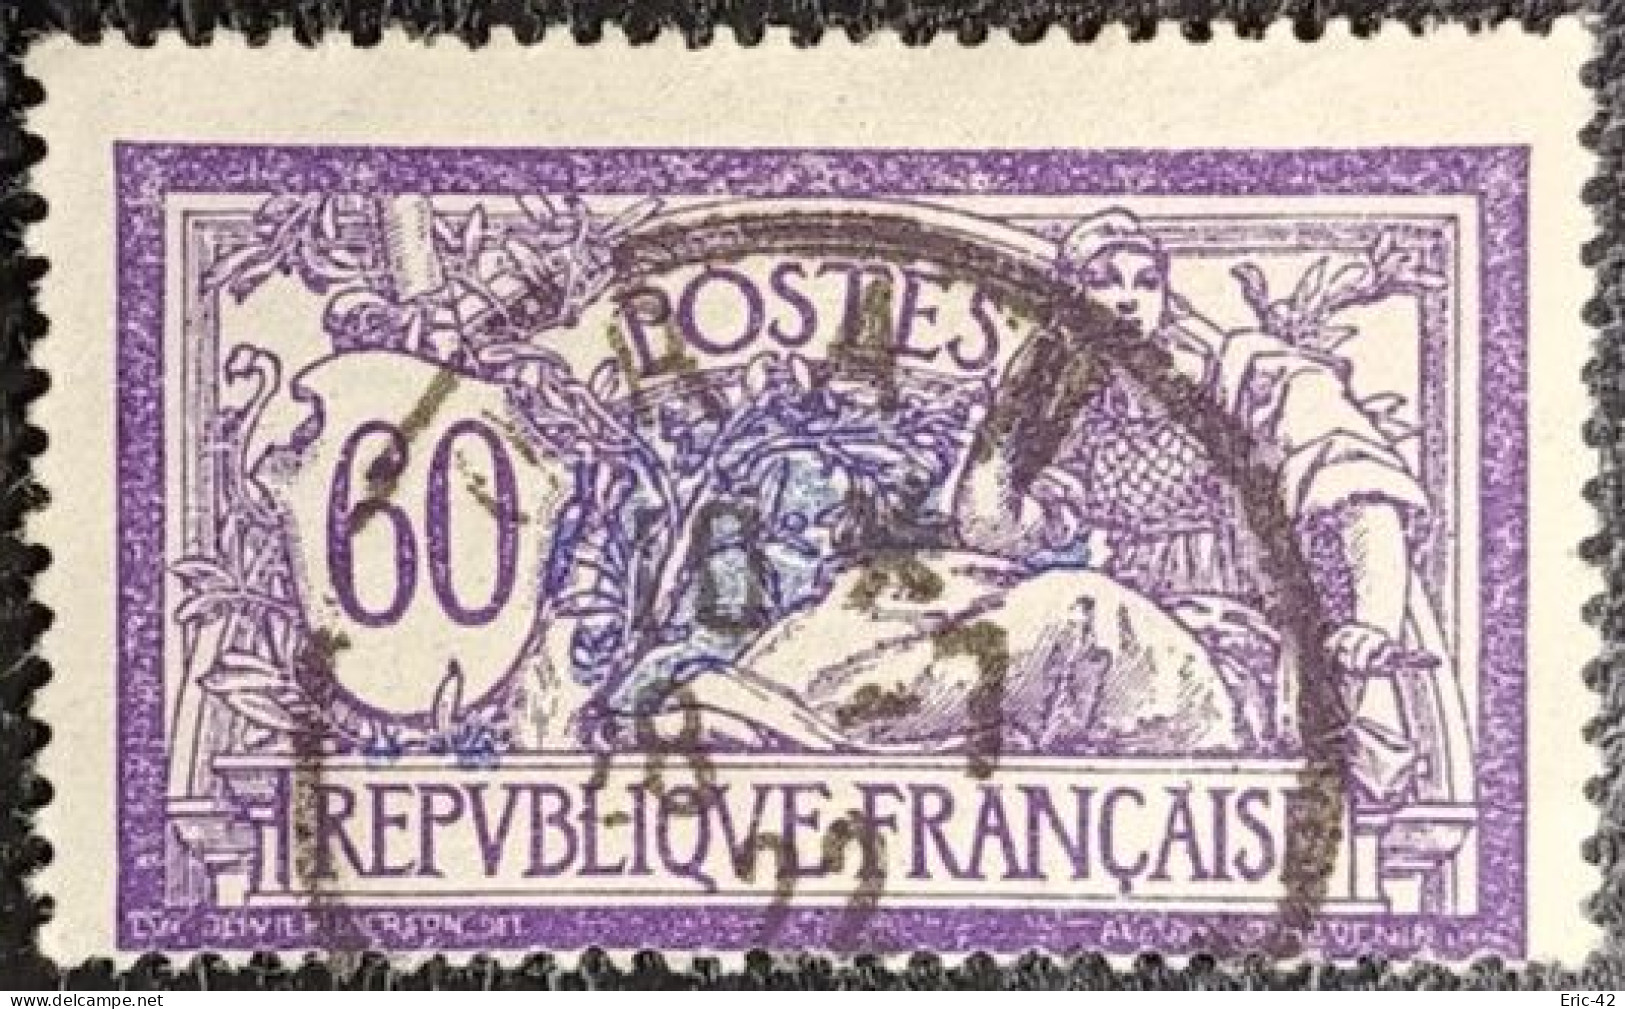 N°144 MERSON 60c Violet Et Bleu. Cachet Du 28 Juillet 1922 à Oran (Algérie) - 1900-27 Merson